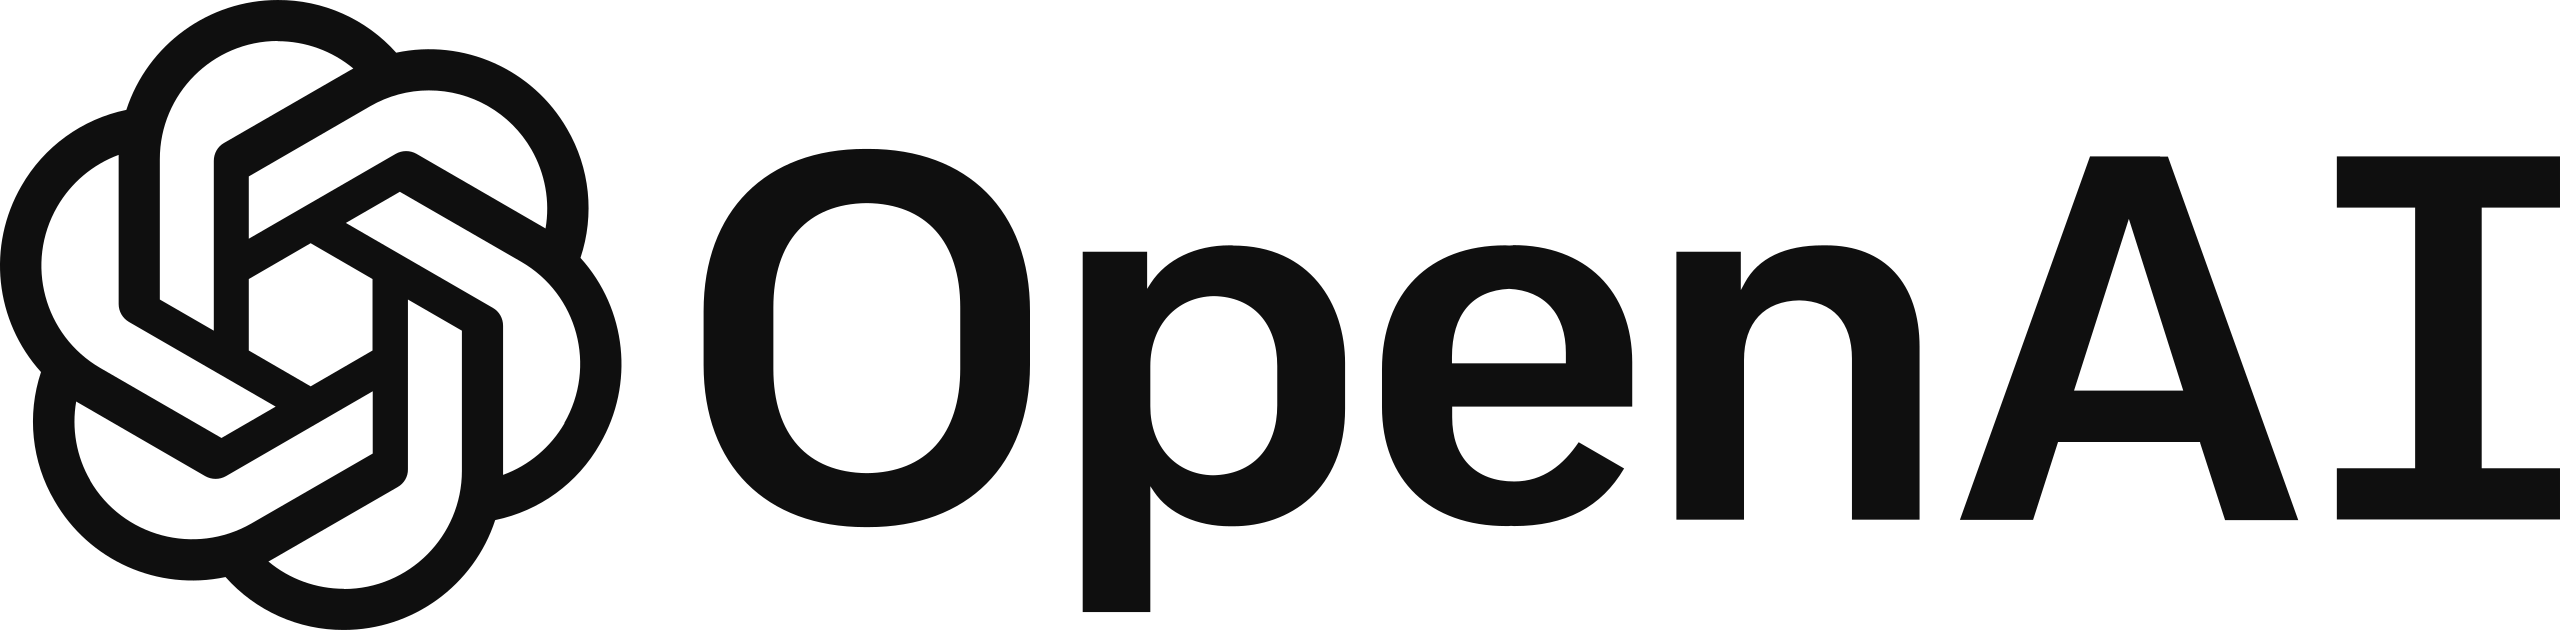 swotmaker.com integration with OpenAI